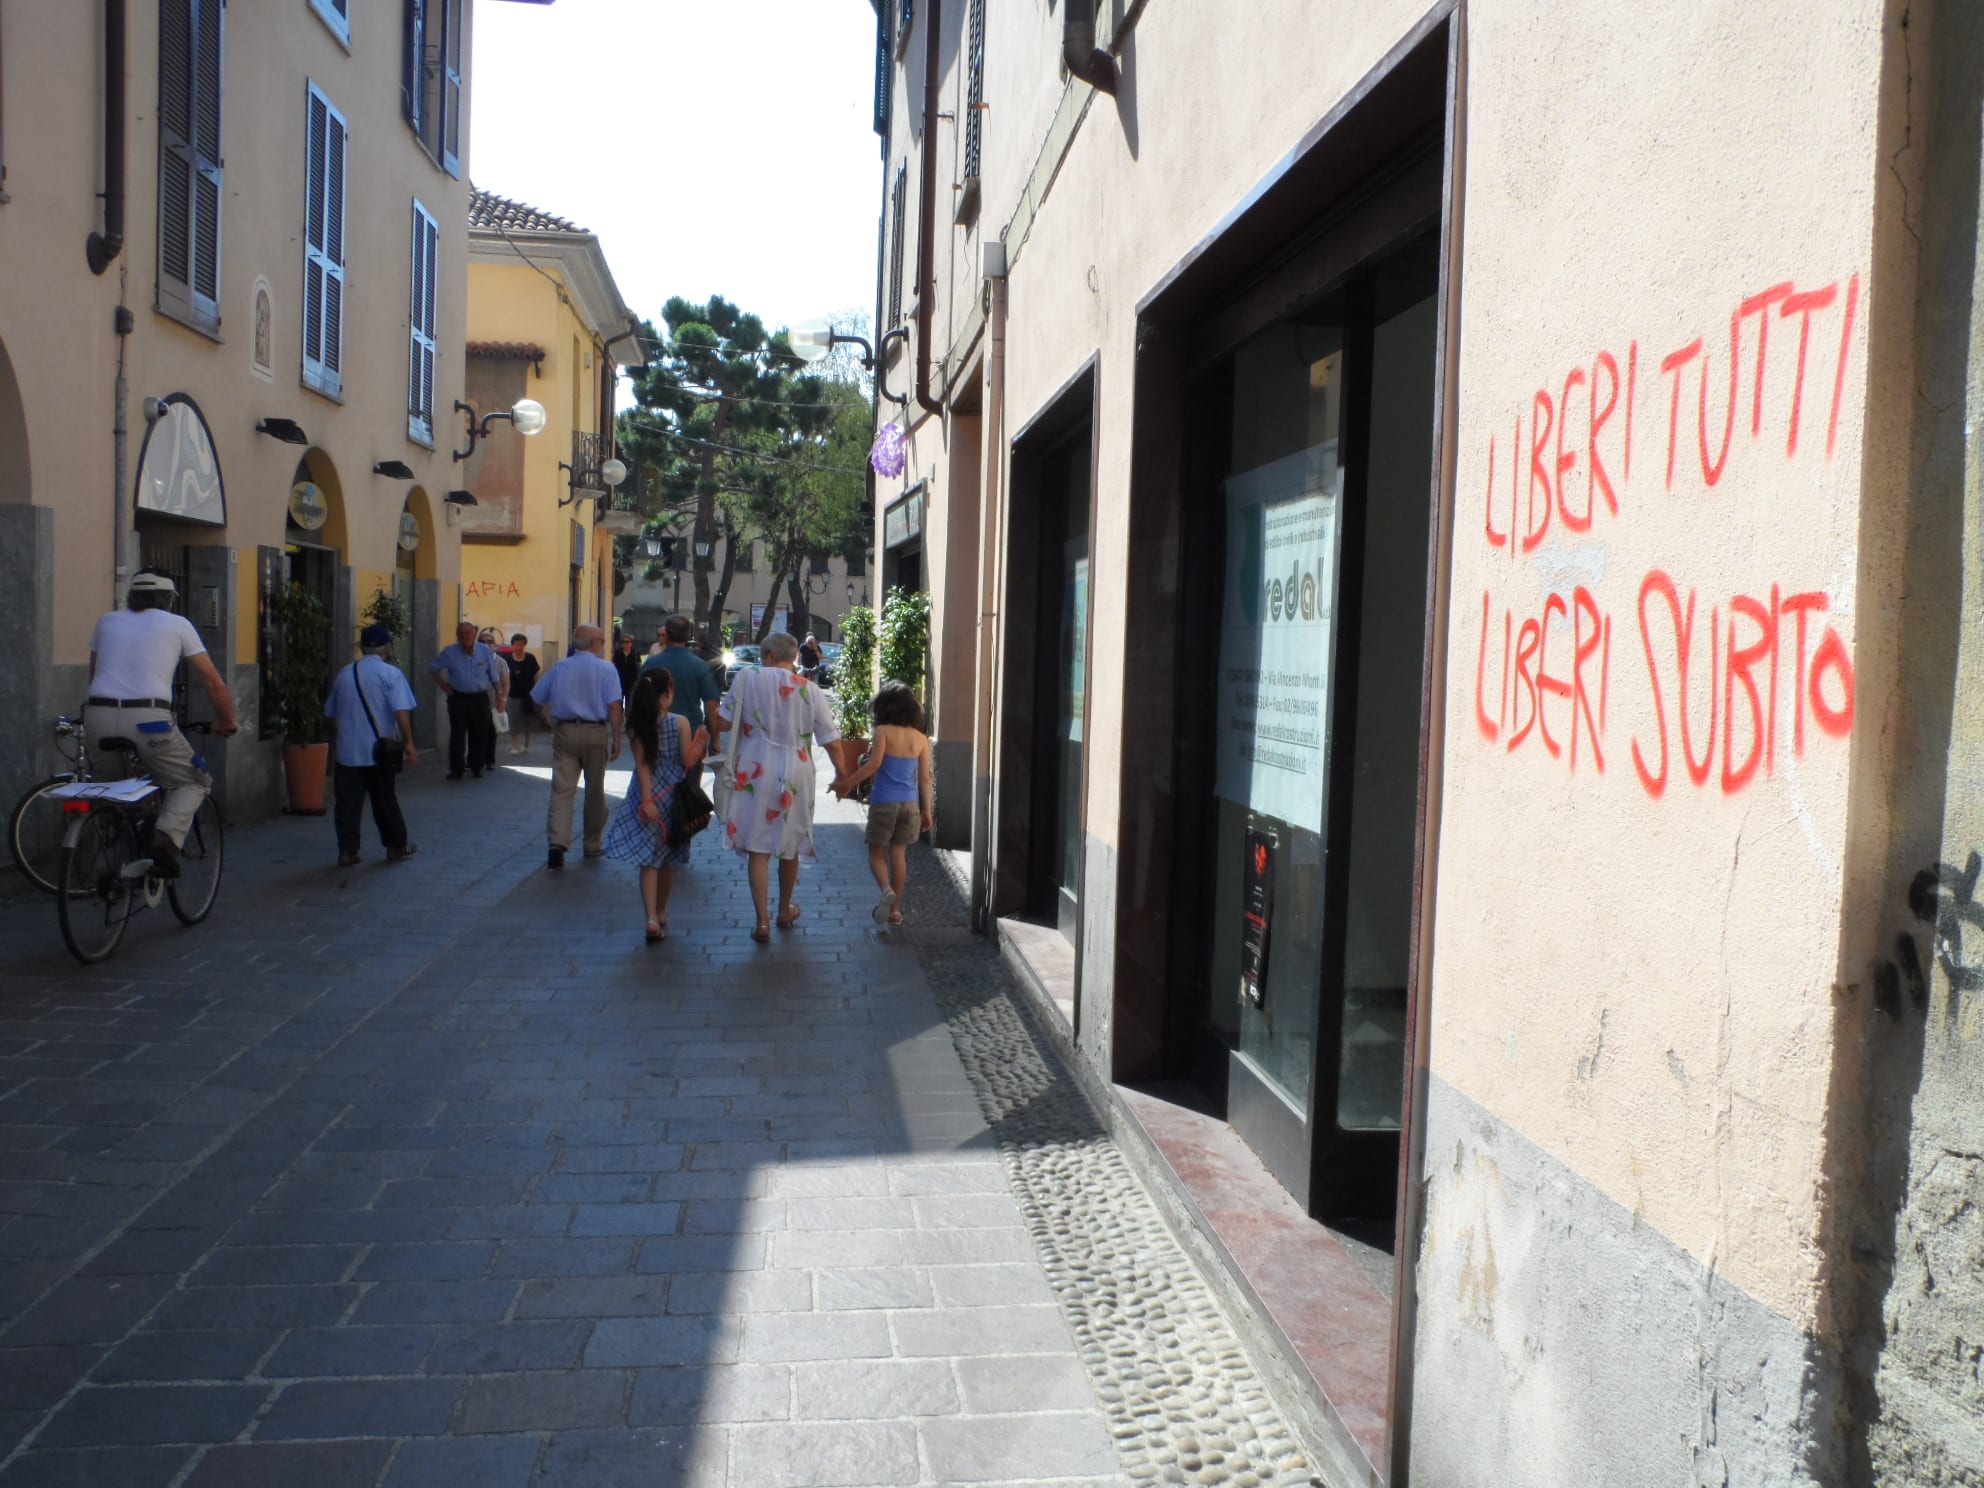 La rabbia degli anarchici sui muri del centro storico: “Liberi tutti, liberi ora”